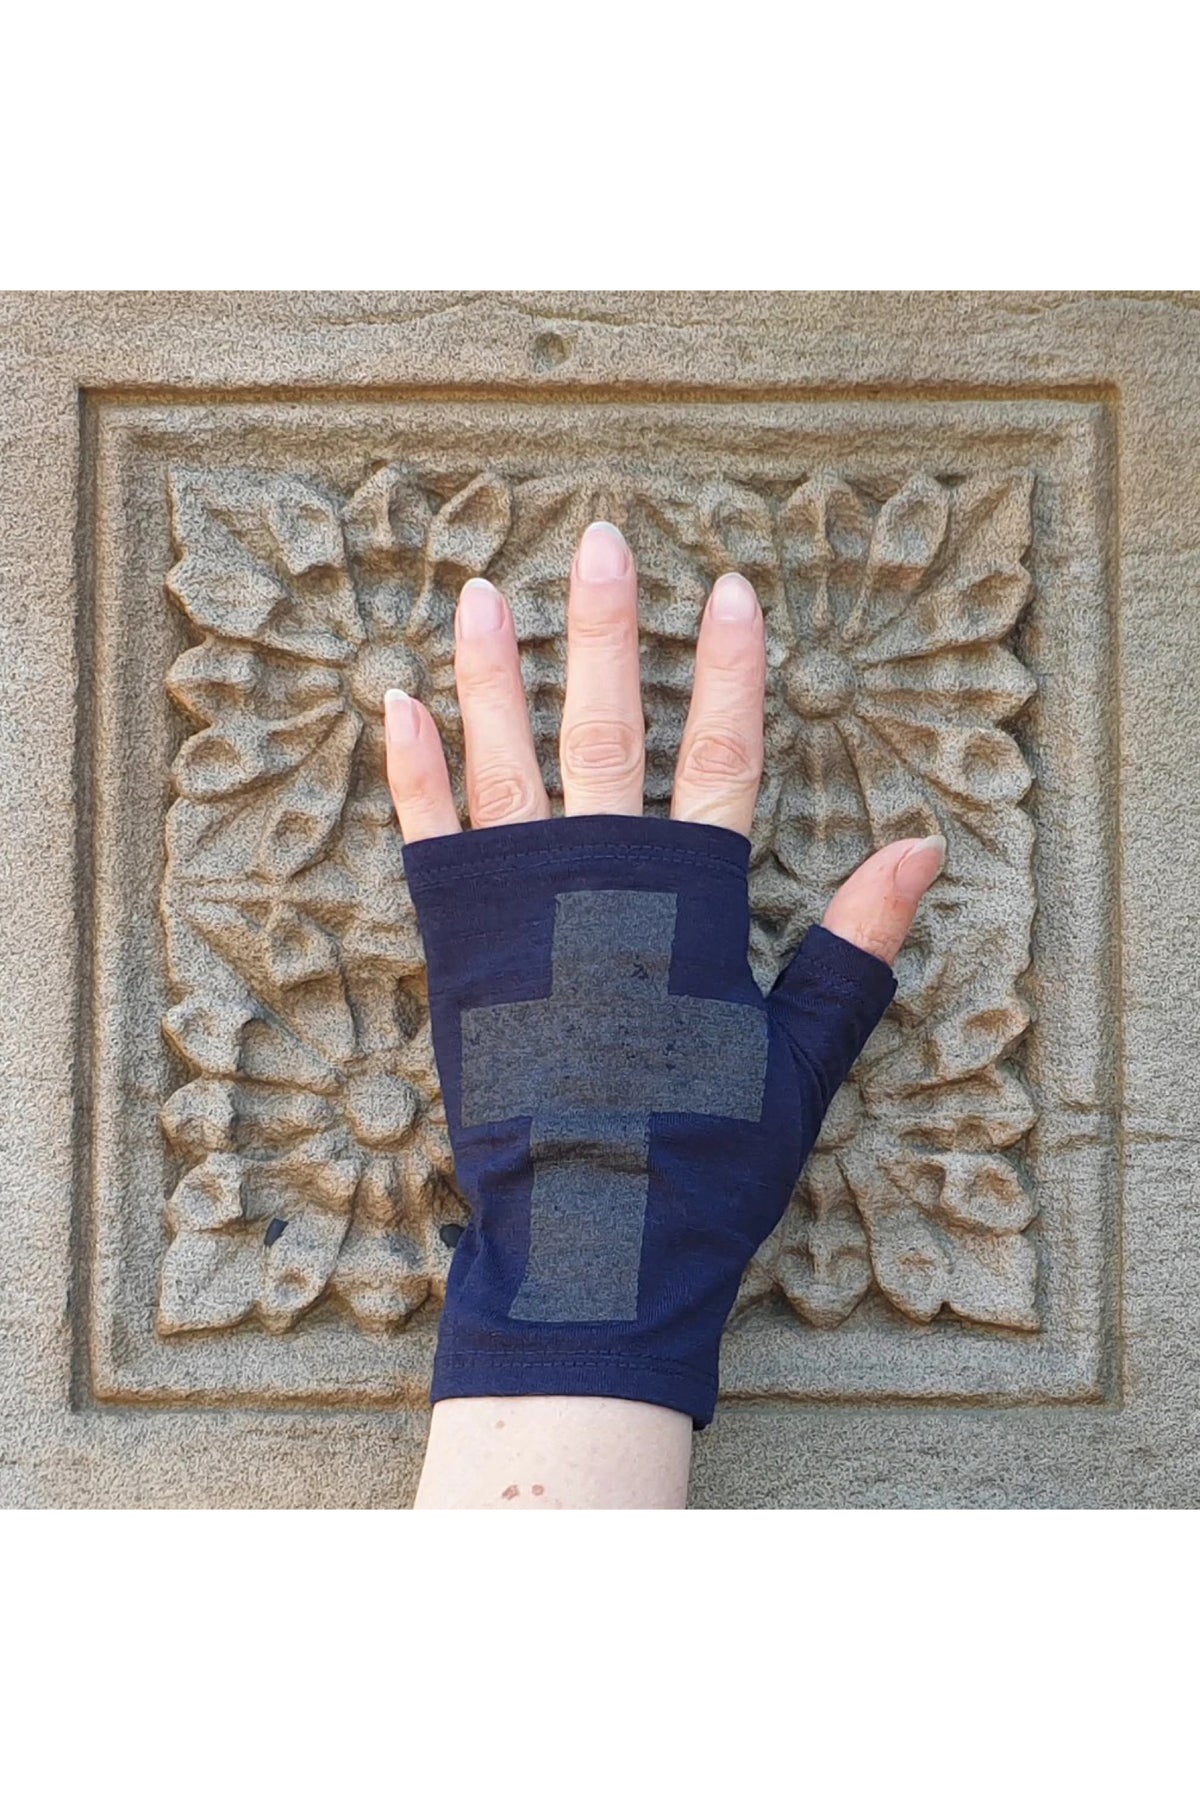 Hobo Length Ink Anthracite Cross Print Fingerless Gloves